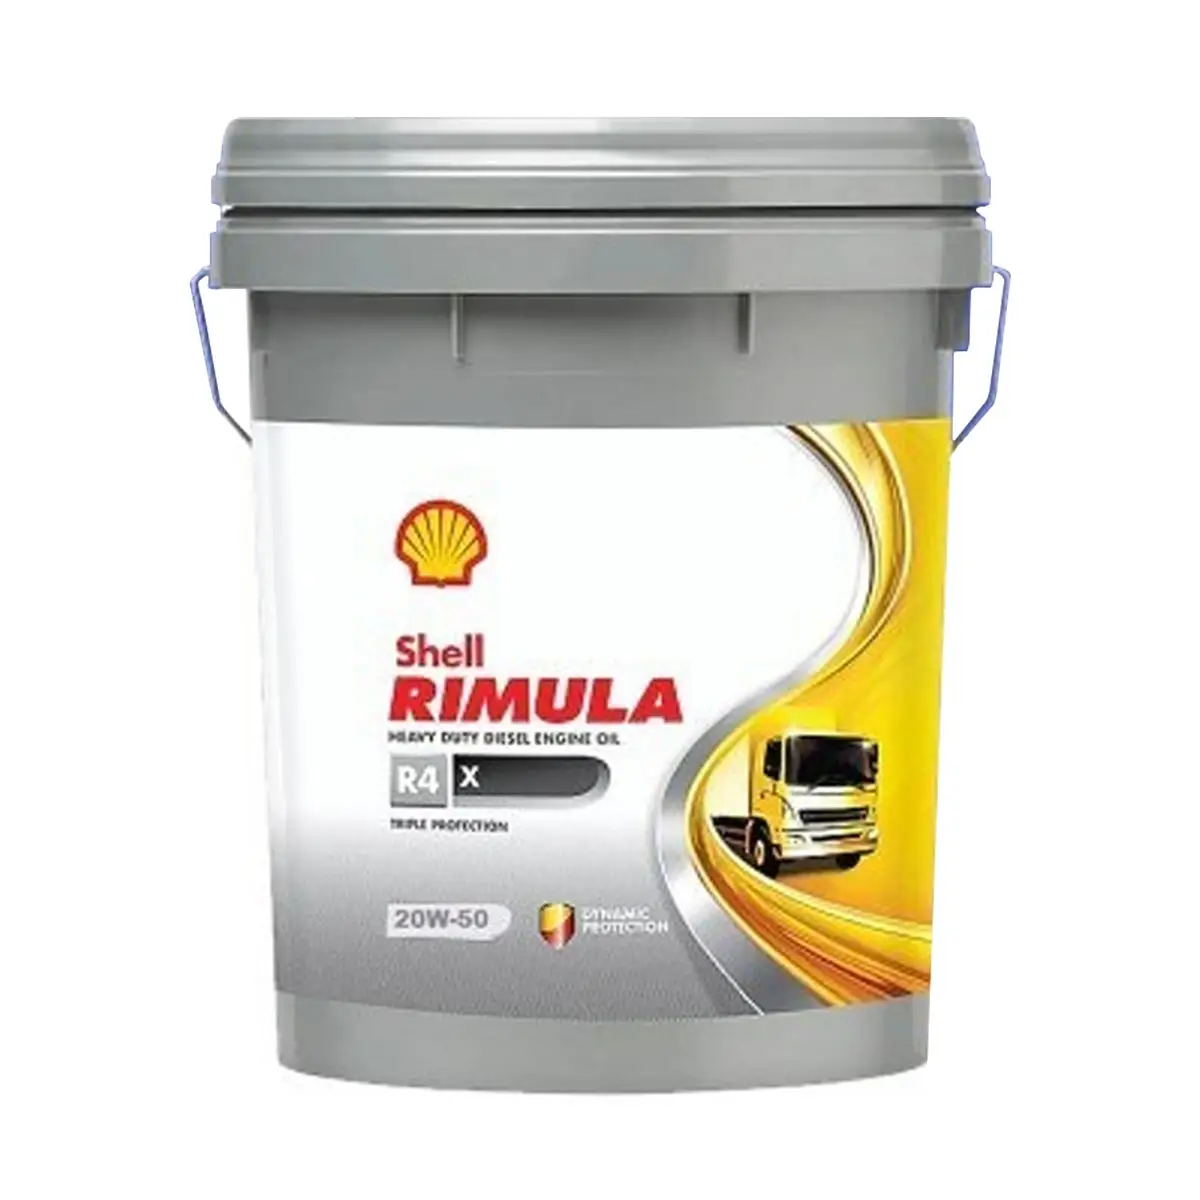 Shell Rimula R4 X SAE20W-50 Taille 18 Litres Qualité normale pour moteurs diesel Conçu pour servir de film protecteur pour les pièces de moteur